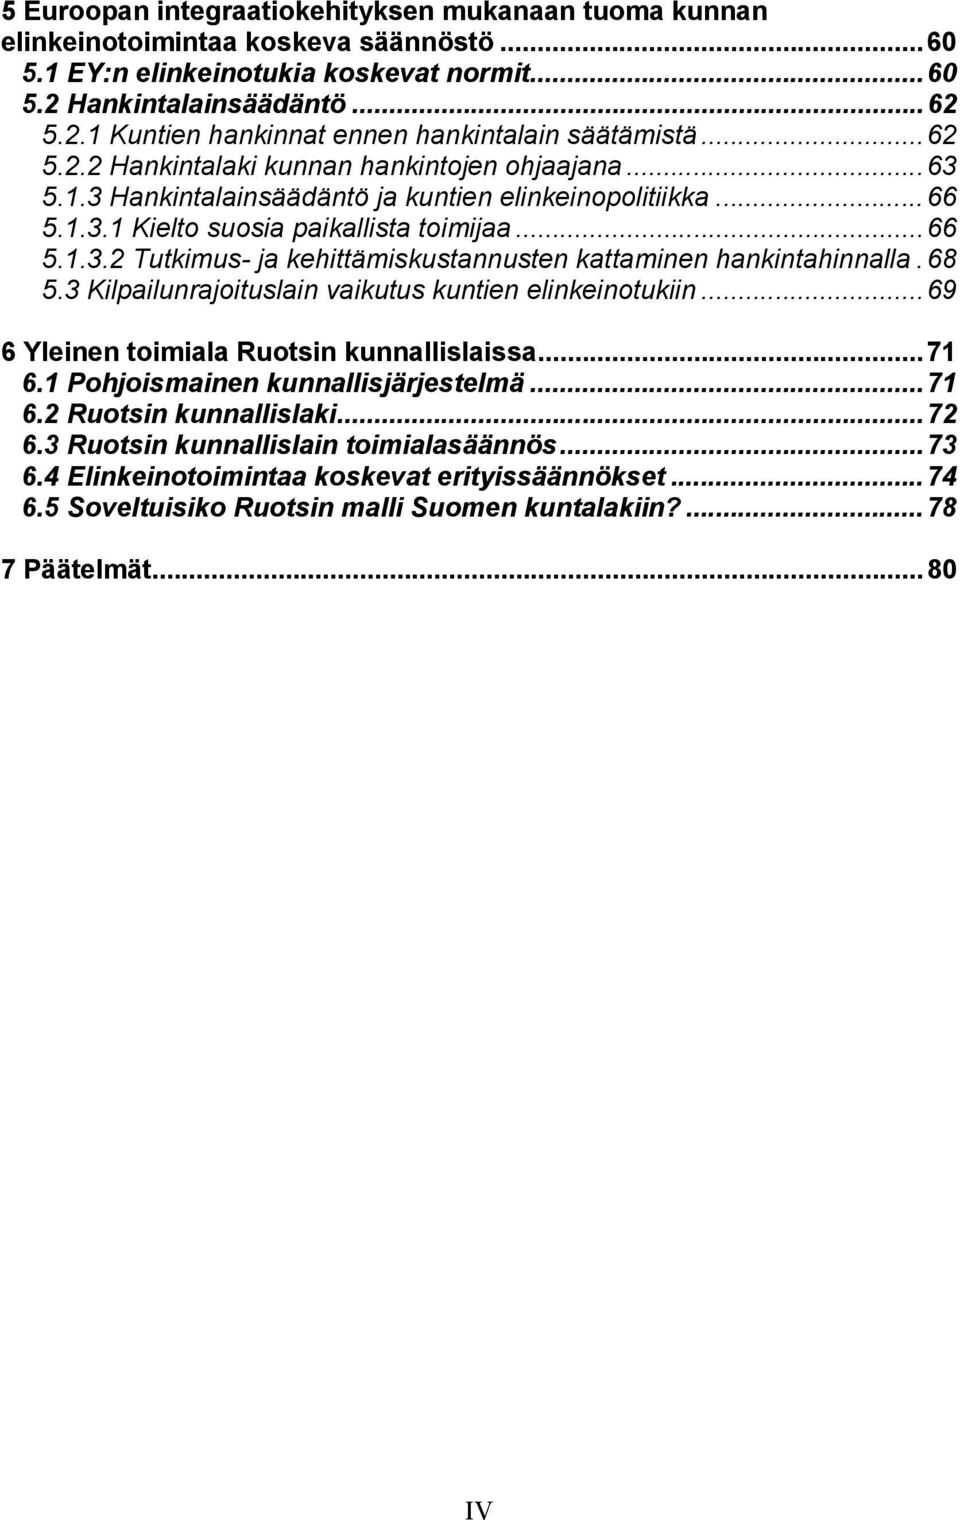 68 5.3 Kilpailunrajoituslain vaikutus kuntien elinkeinotukiin...69 6 Yleinen toimiala Ruotsin kunnallislaissa...71 6.1 Pohjoismainen kunnallisjärjestelmä...71 6.2 Ruotsin kunnallislaki...72 6.